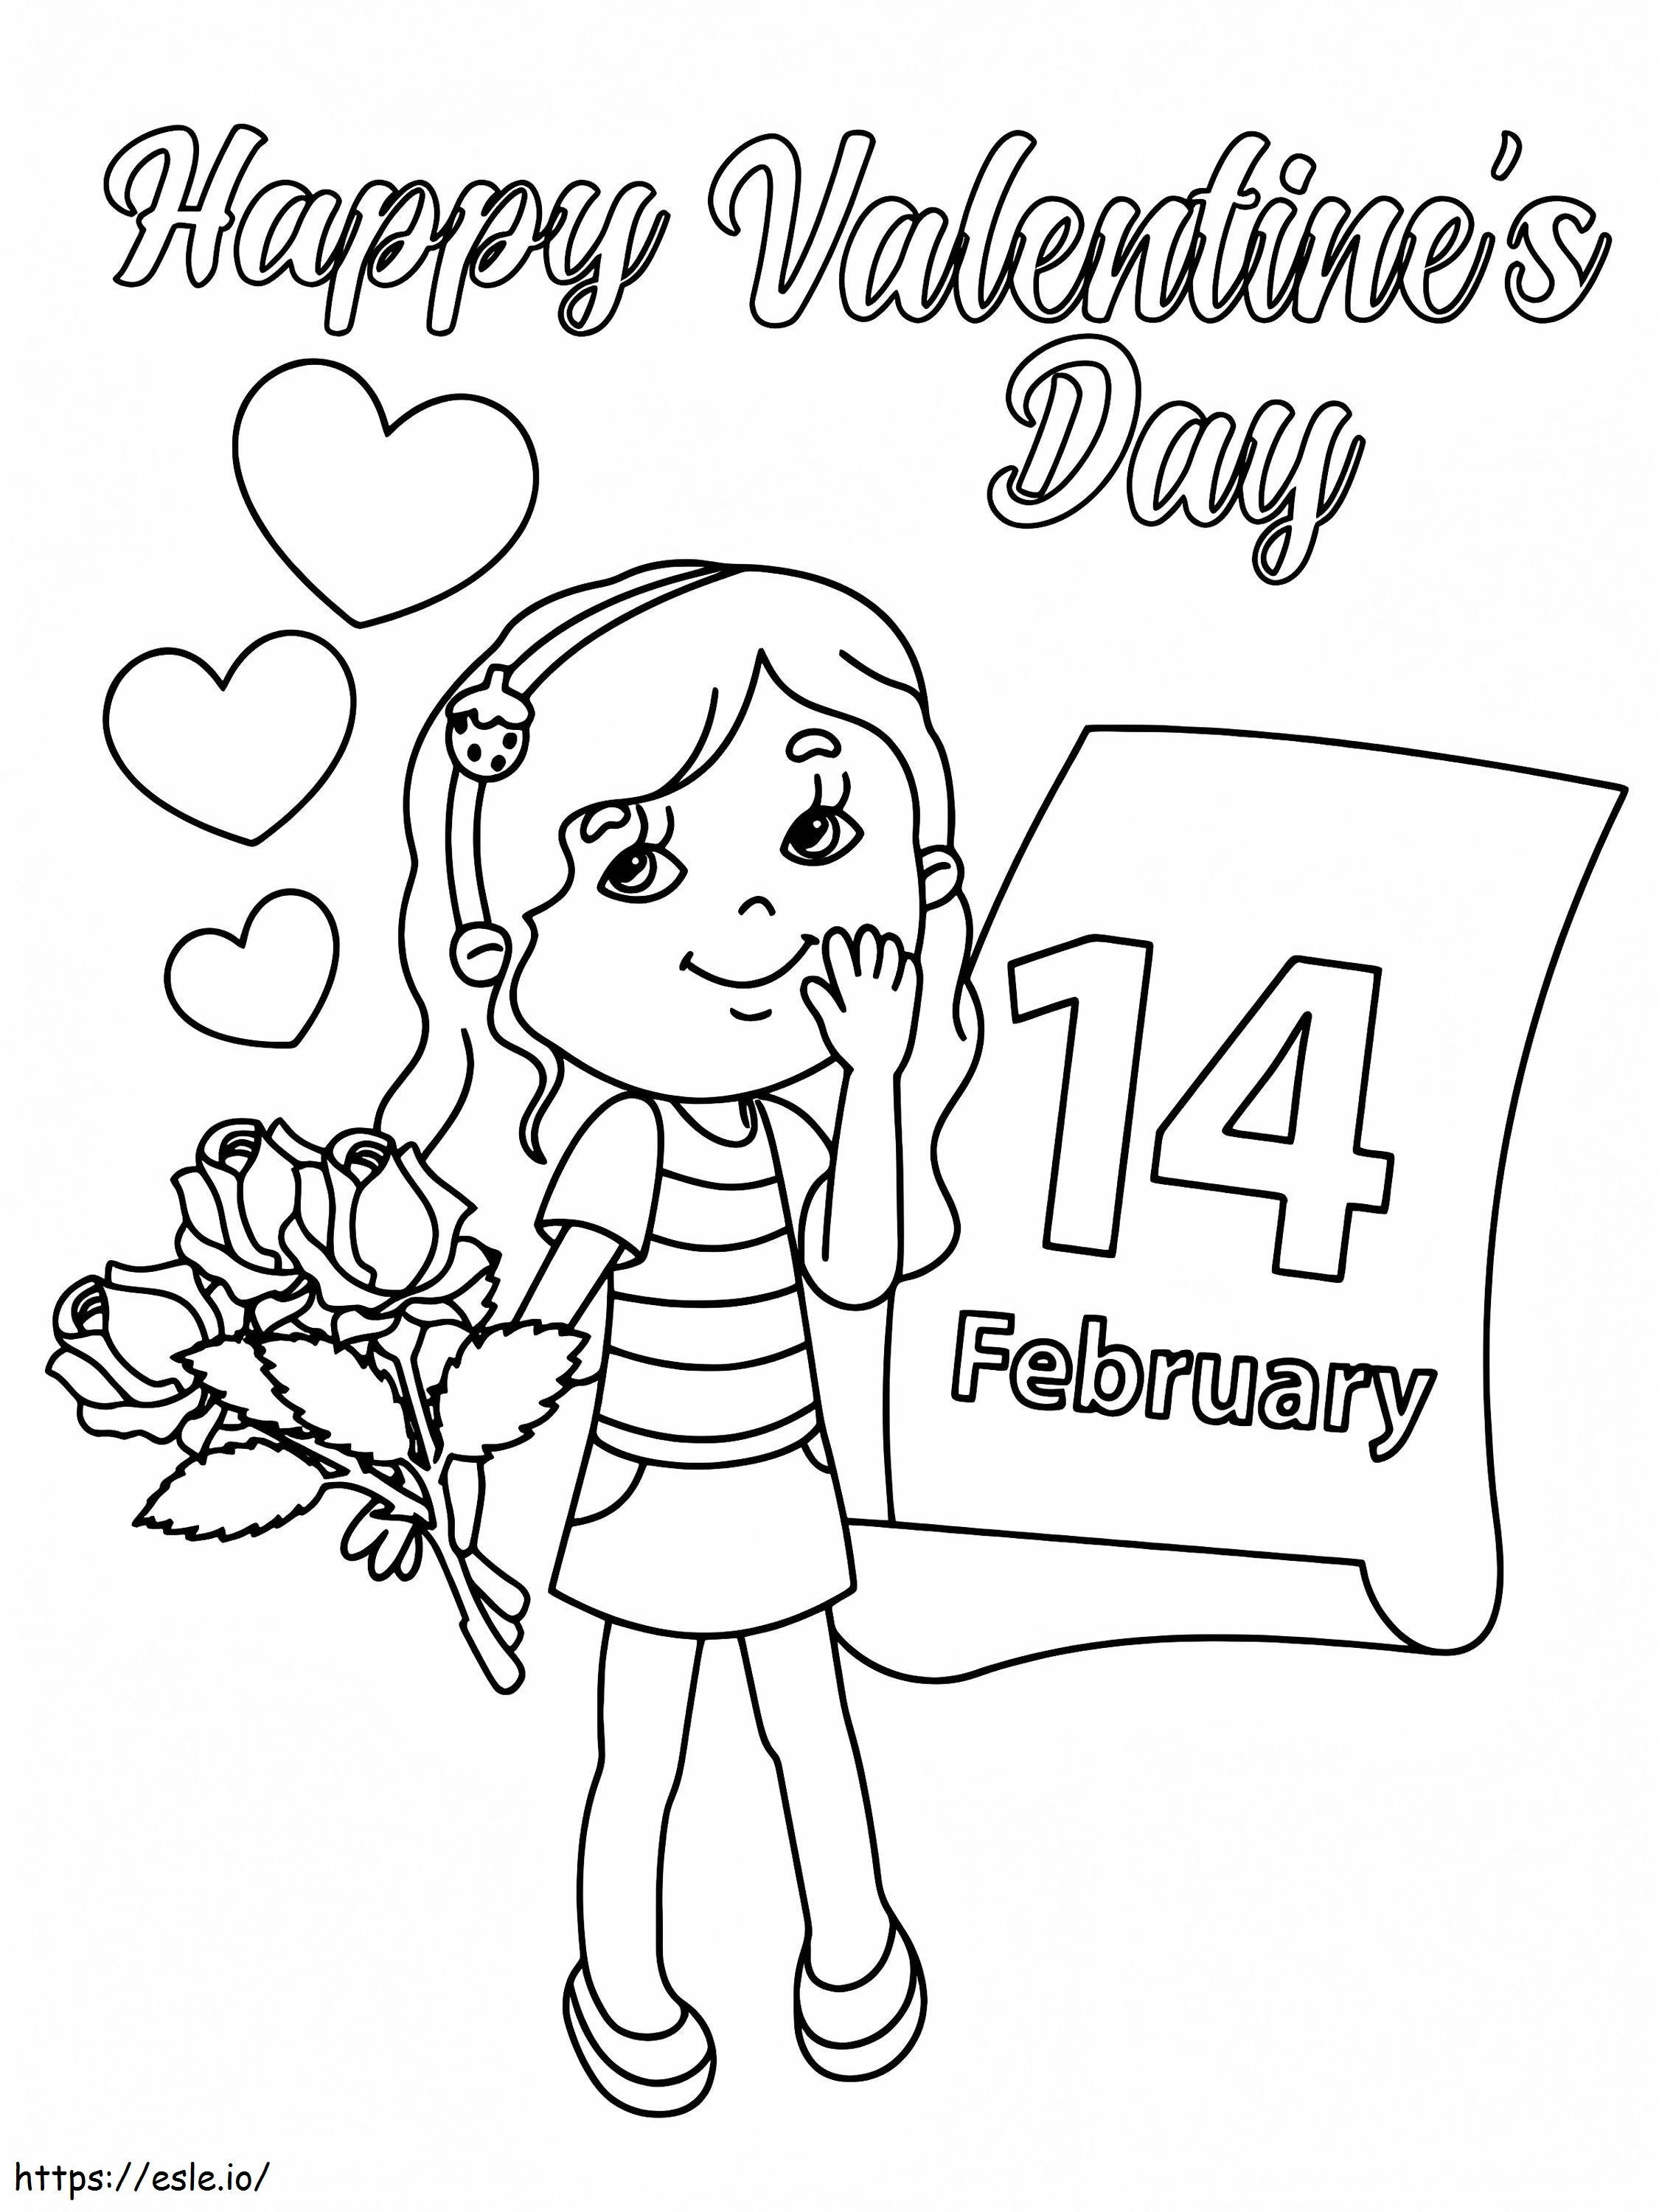 14 De Febrero Día De San Valentín para colorear